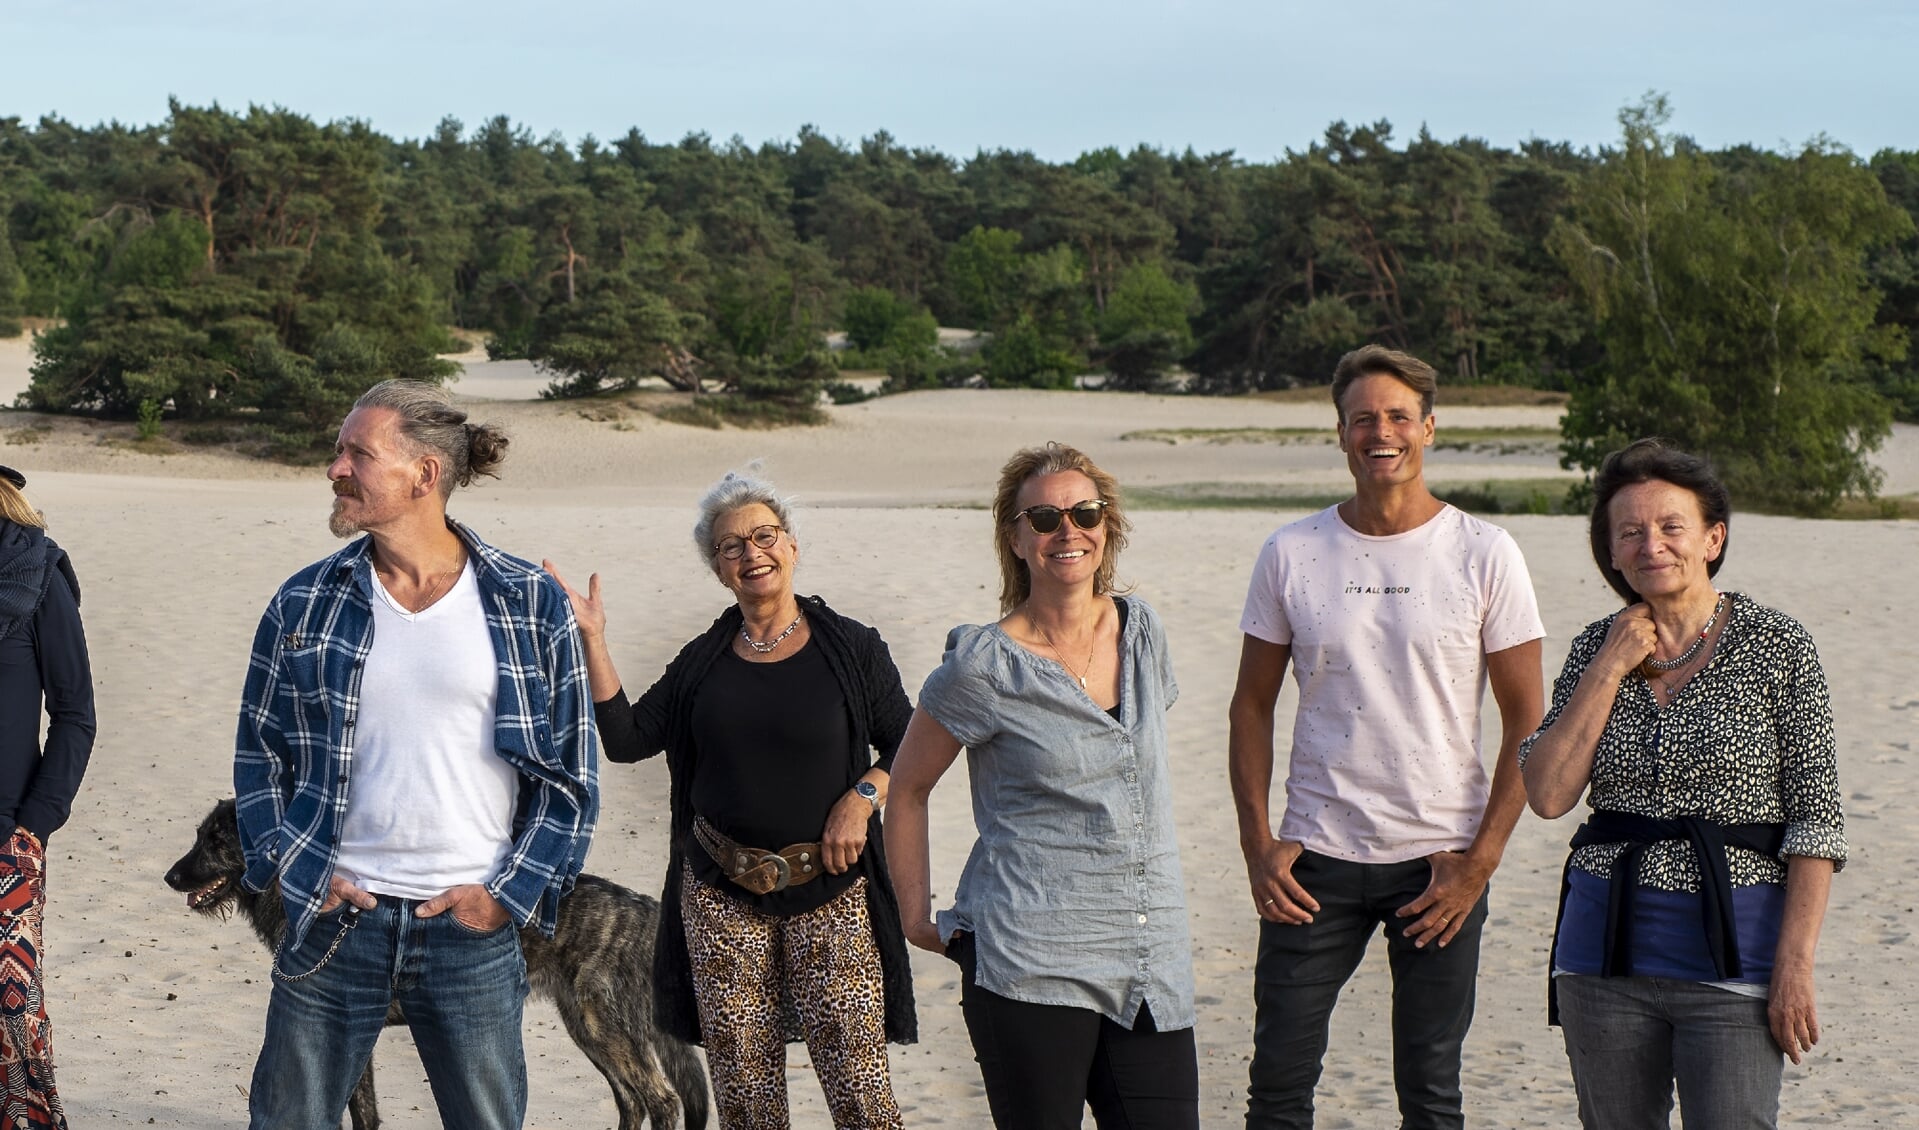 Vijf van de tien kunstenaars die meedoen aan 'Kunstroute, terug naar onze wortels' in beeld. Links: Myrna van Schoonhorst.